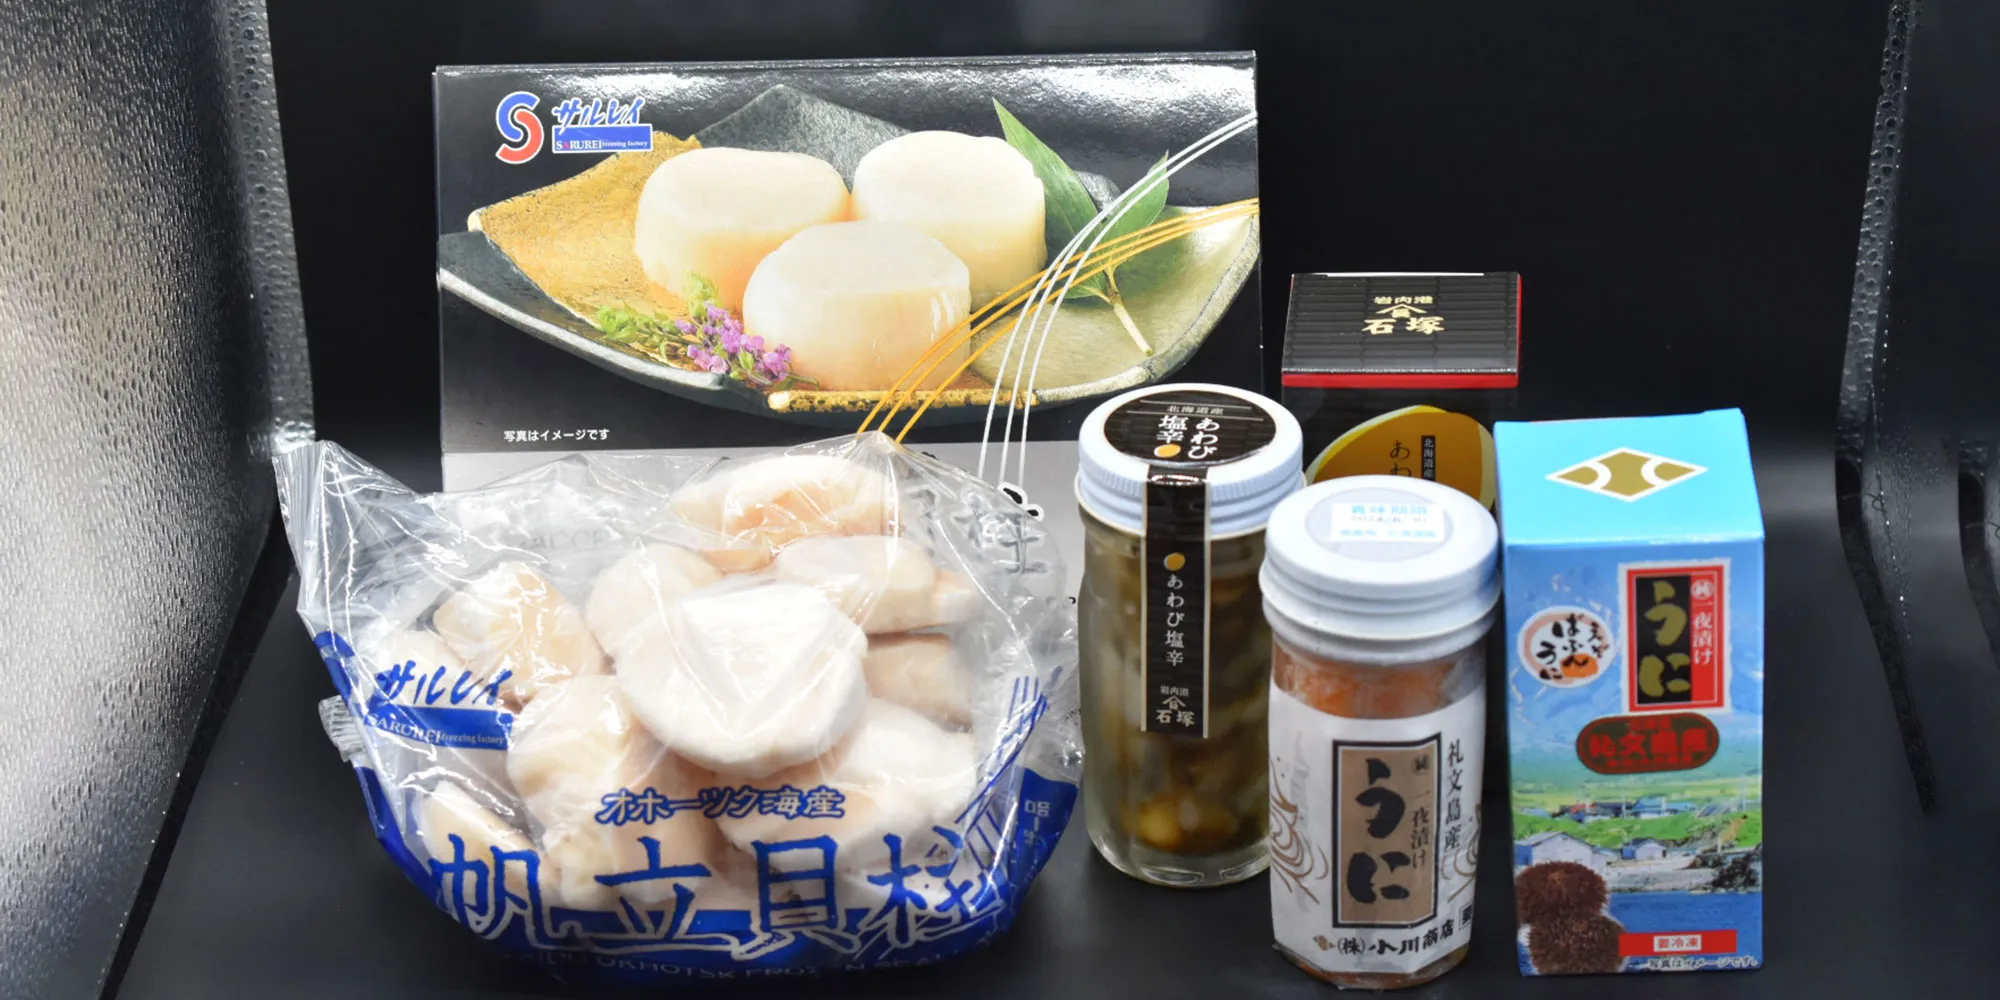 北海道 新鮮な魚介・豊富な農作物を 北海道から全国へお届け 名産